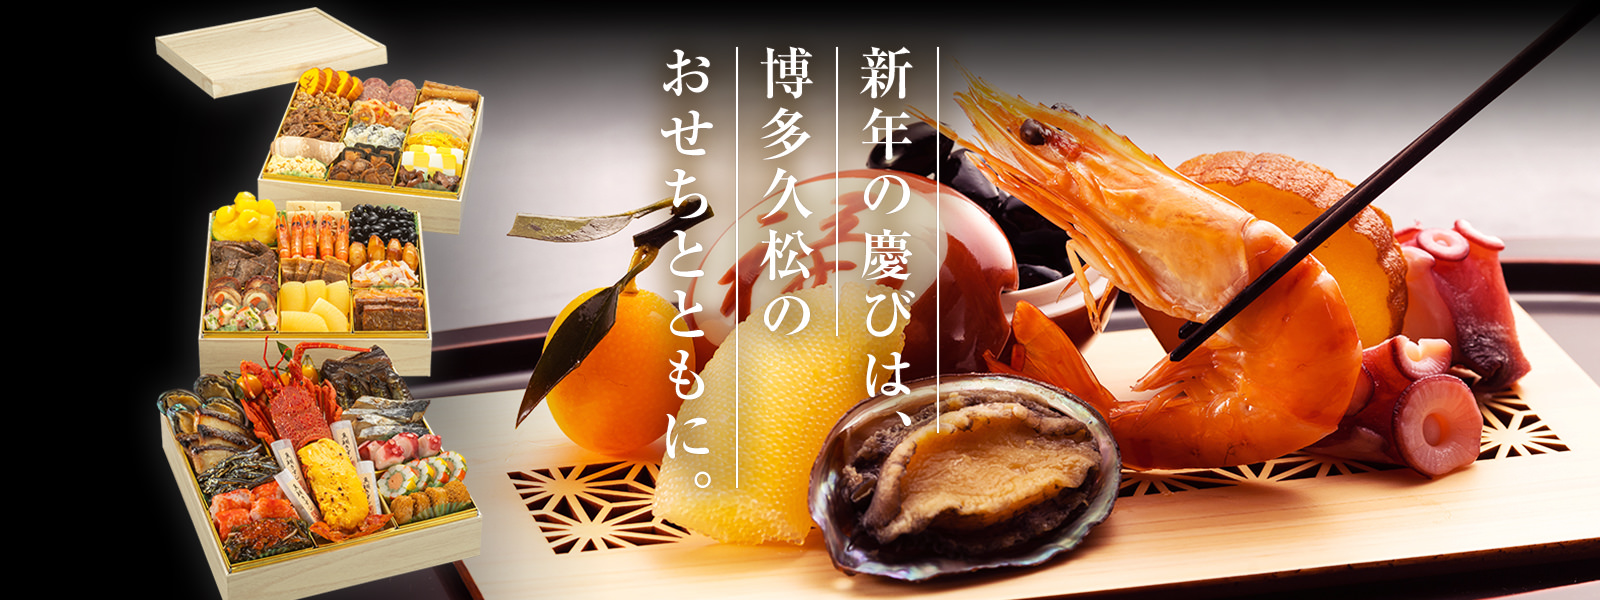 新年の慶びは、博多久松のおせちとともに